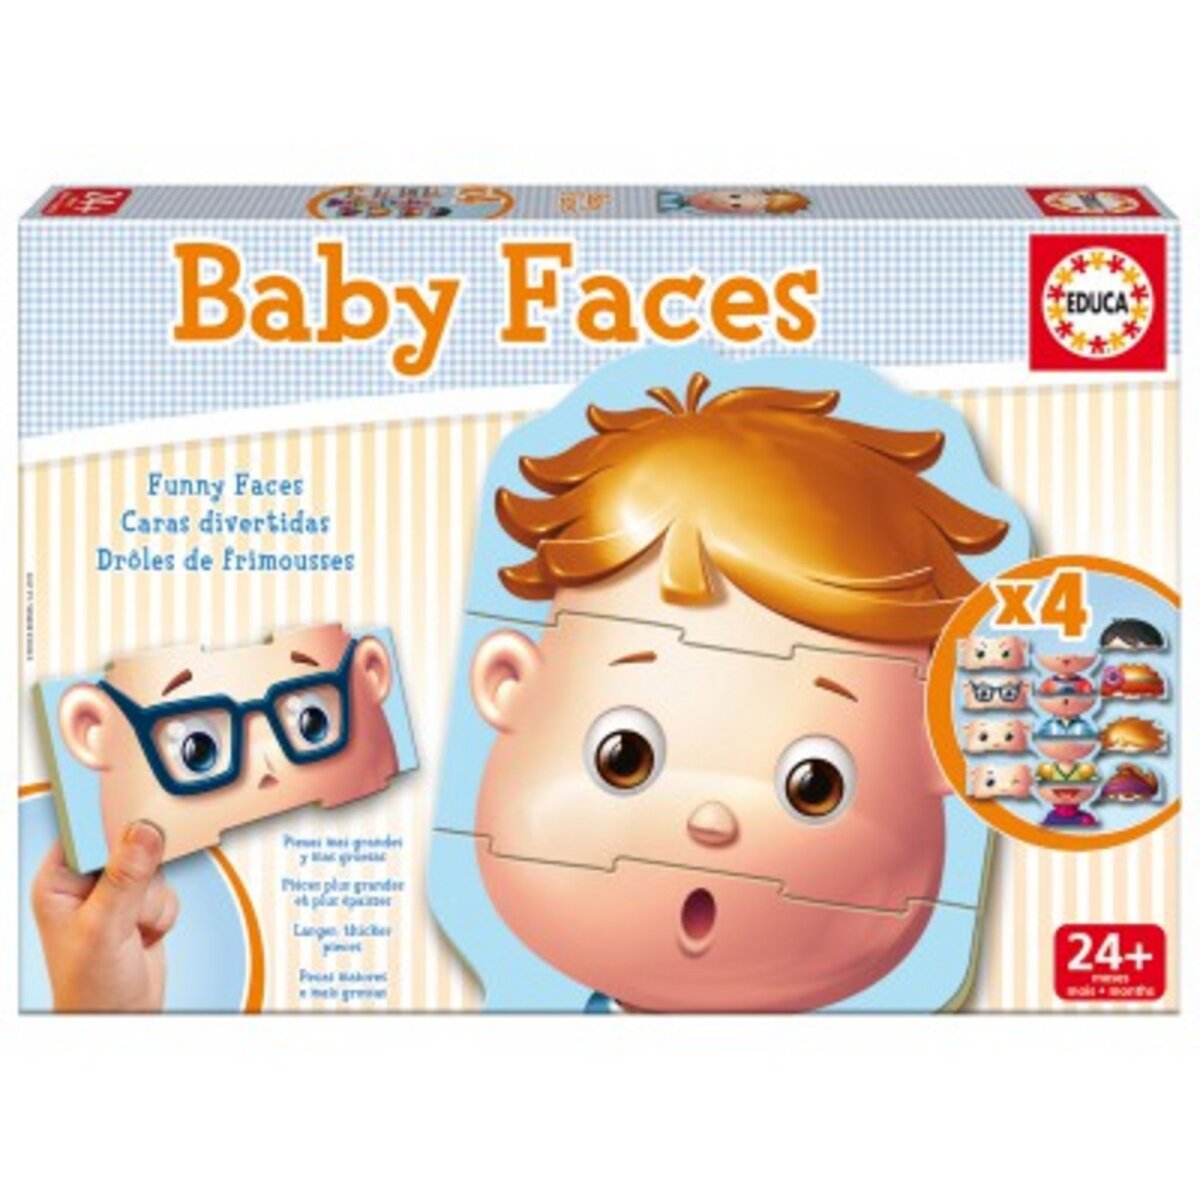 EDUCA Baby Faces